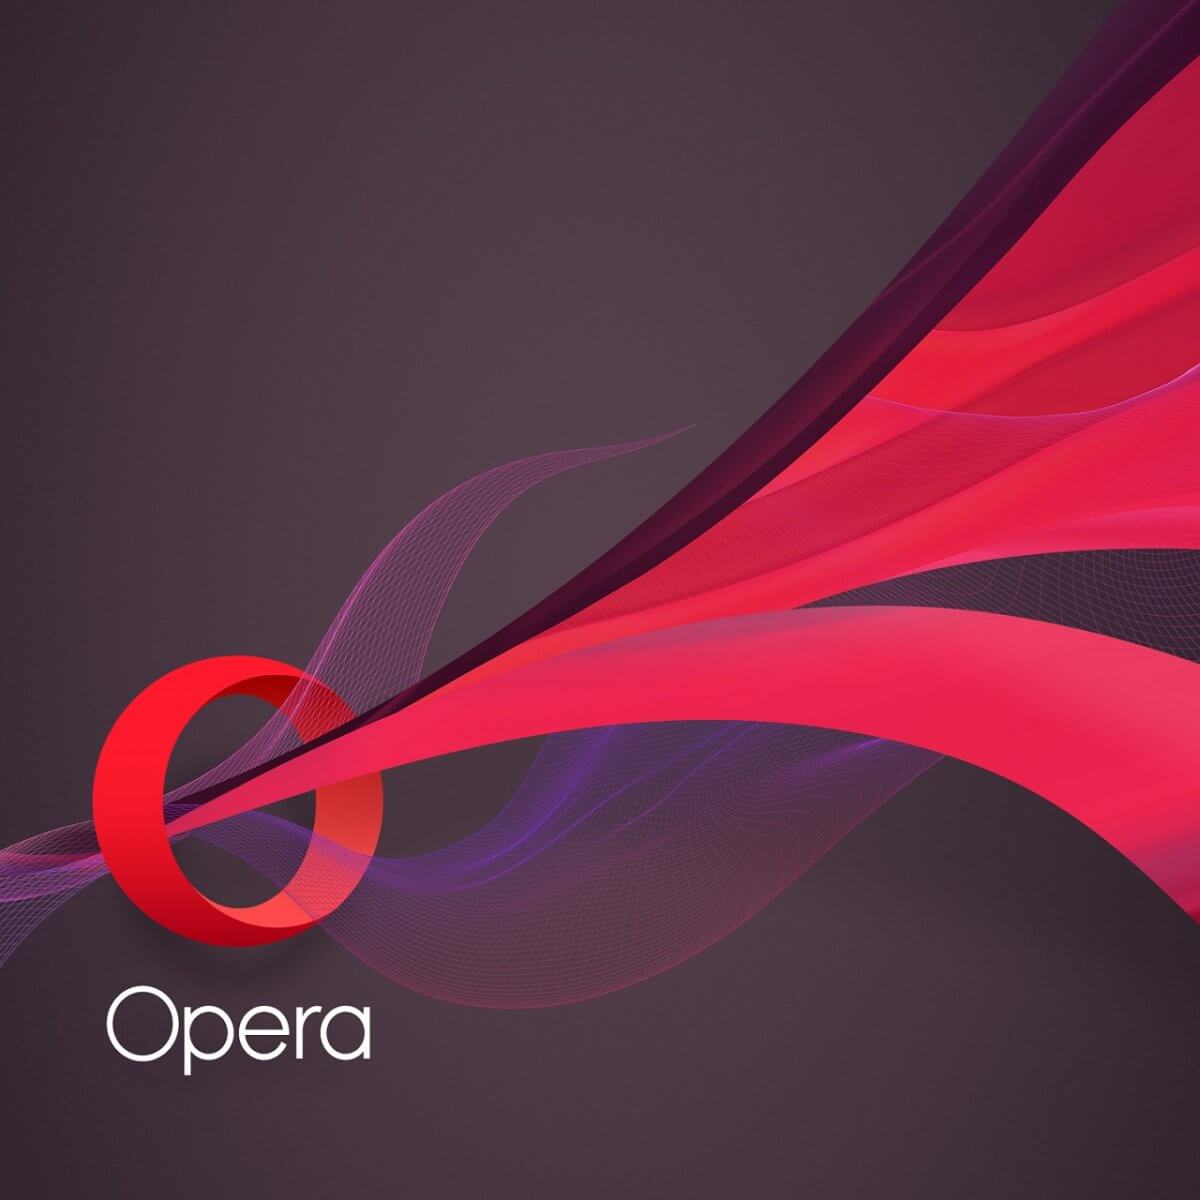 Opera GX 99.0.4788.75 free instals